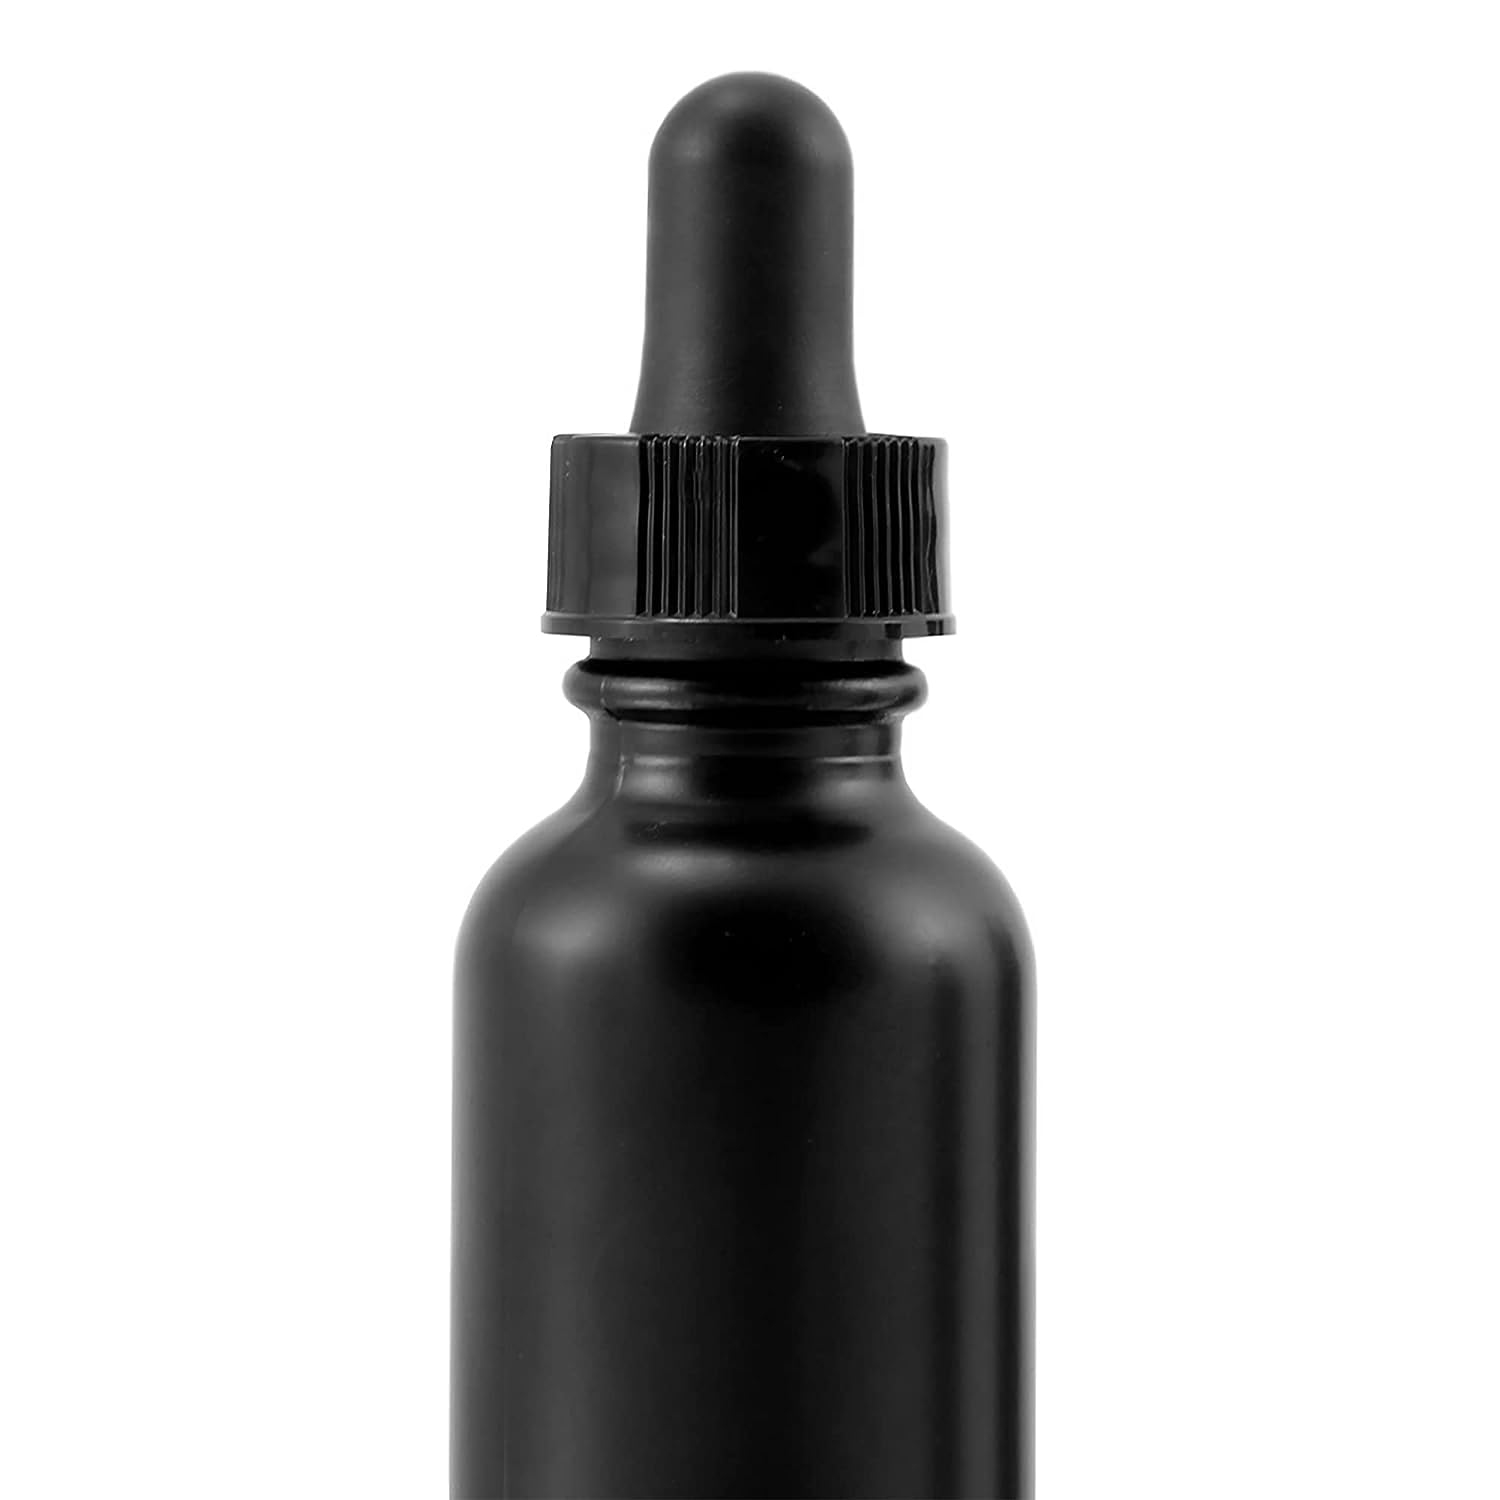 1oz Black Coated Glass UV Resistant Eye Dropper Bottles (6 pack) - sh1221cb0